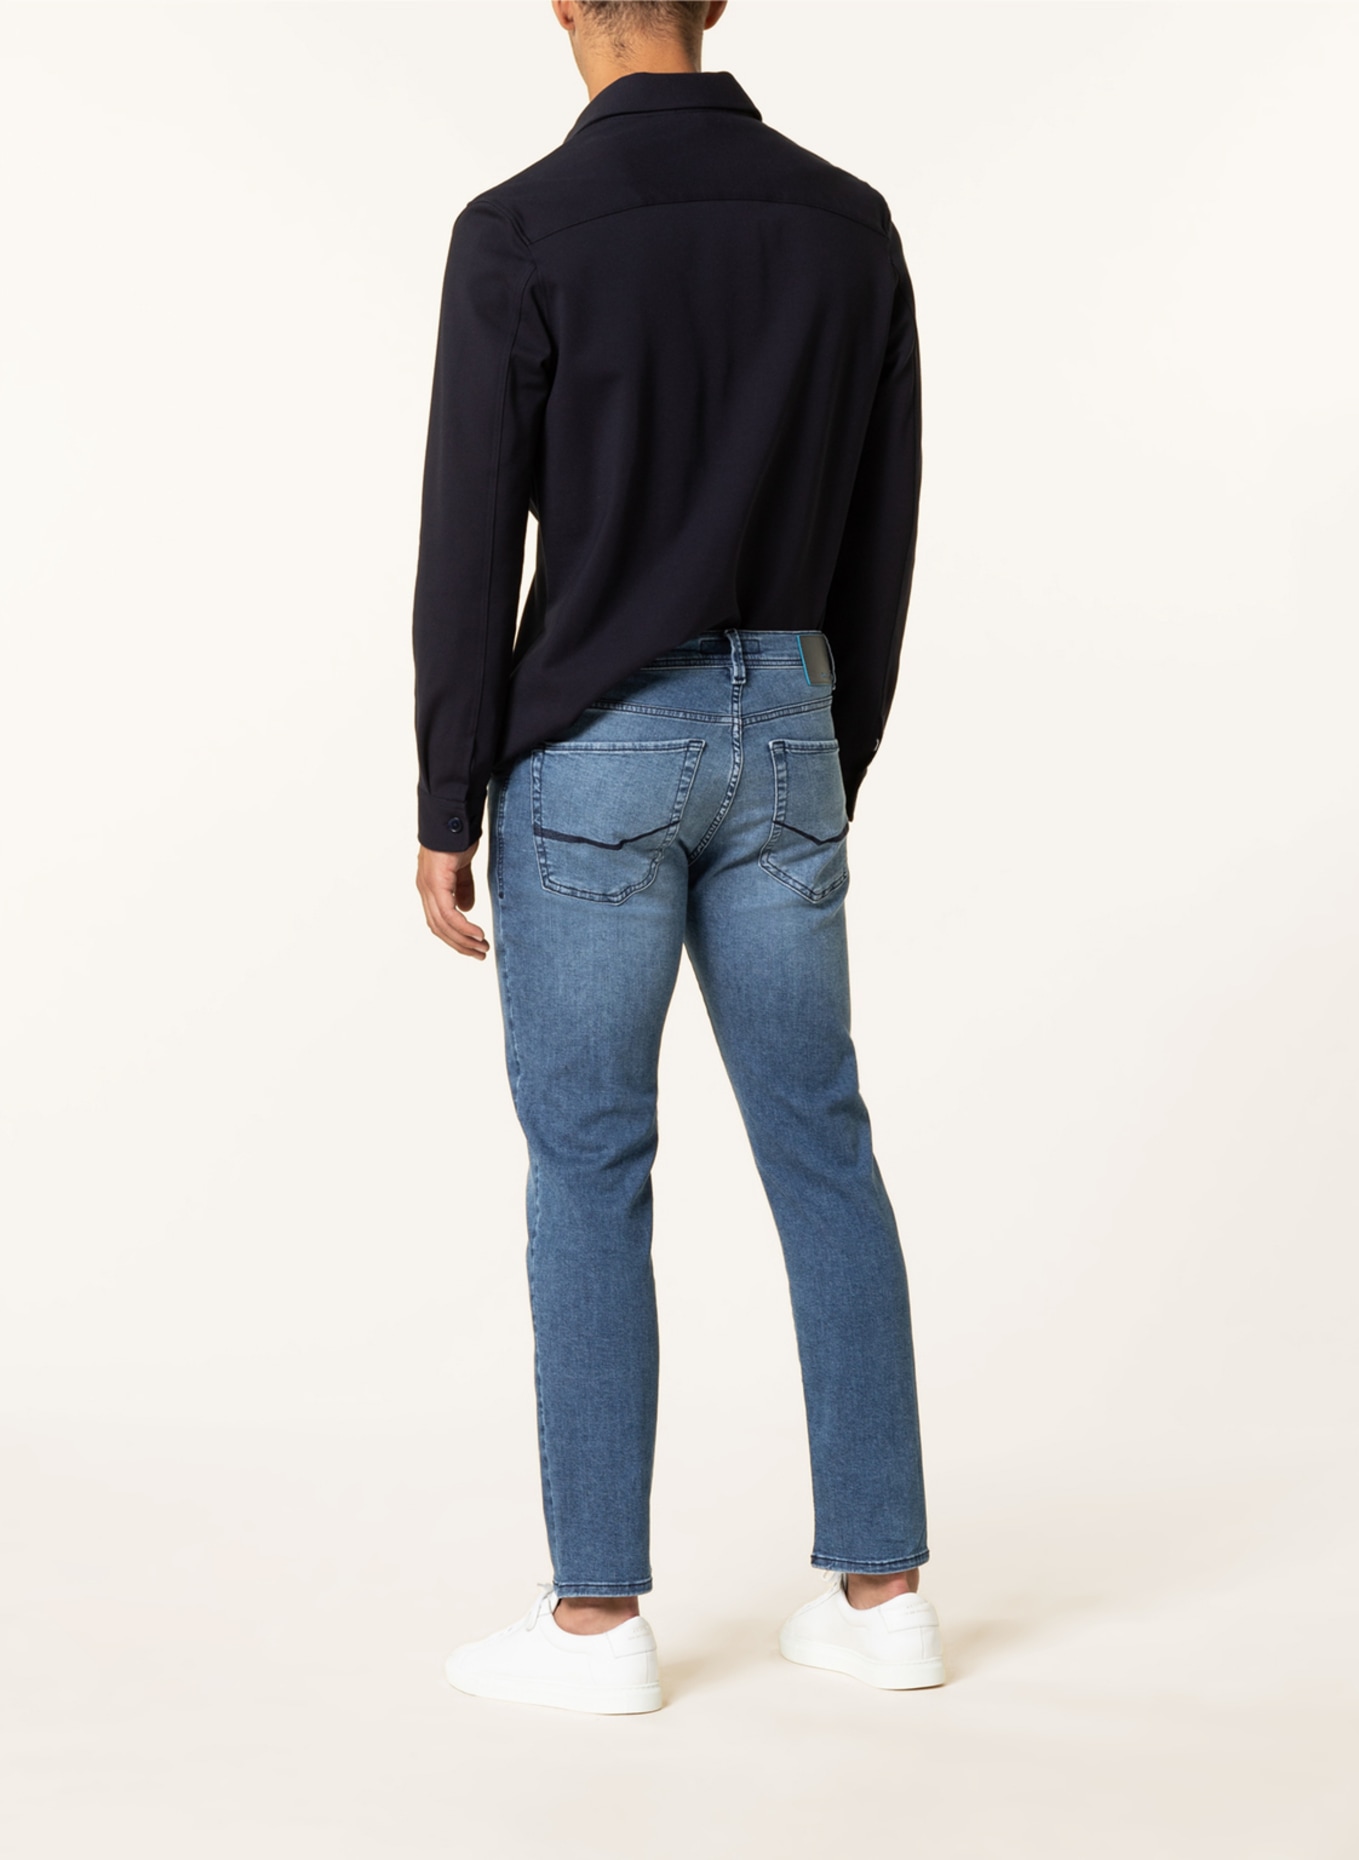 pierre cardin Jeans LYON Slim Fit, Farbe: 6824 blue used buffies (Bild 3)